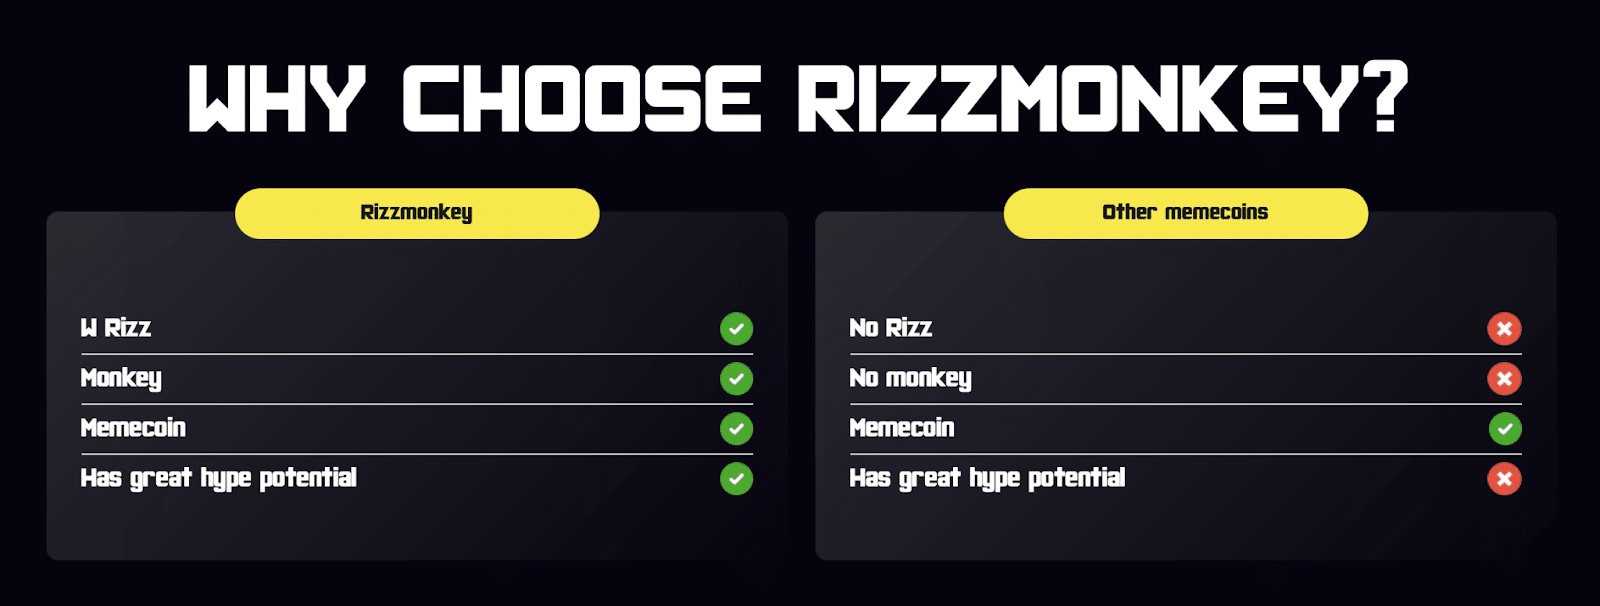 PR-Rizz-Monkey-Tabela